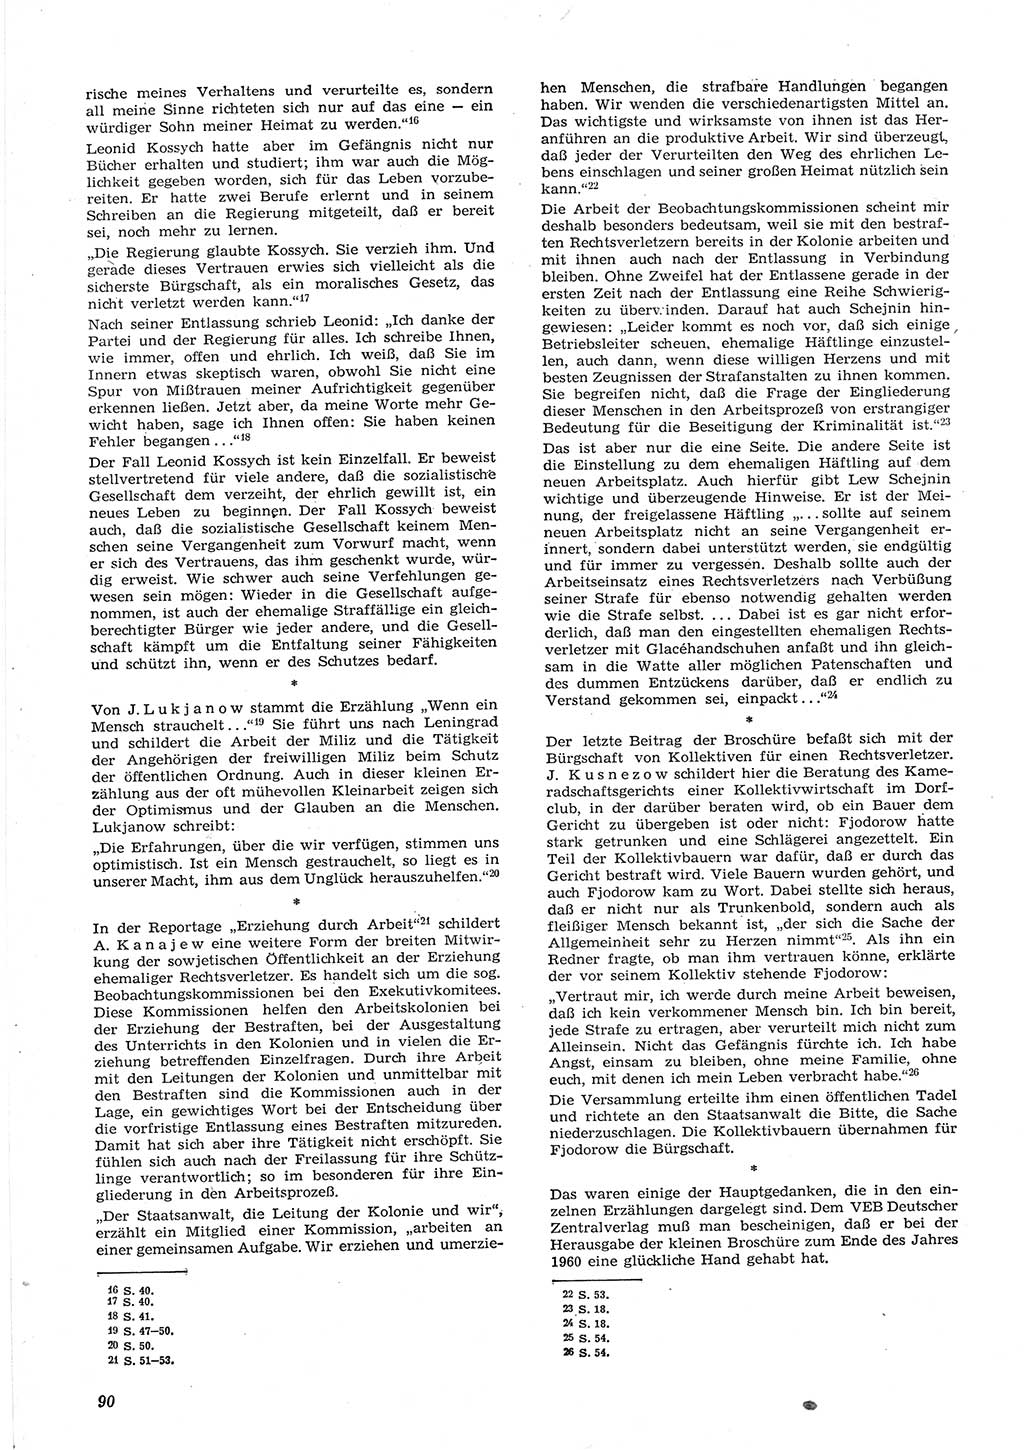 Neue Justiz (NJ), Zeitschrift für Recht und Rechtswissenschaft [Deutsche Demokratische Republik (DDR)], 15. Jahrgang 1961, Seite 90 (NJ DDR 1961, S. 90)